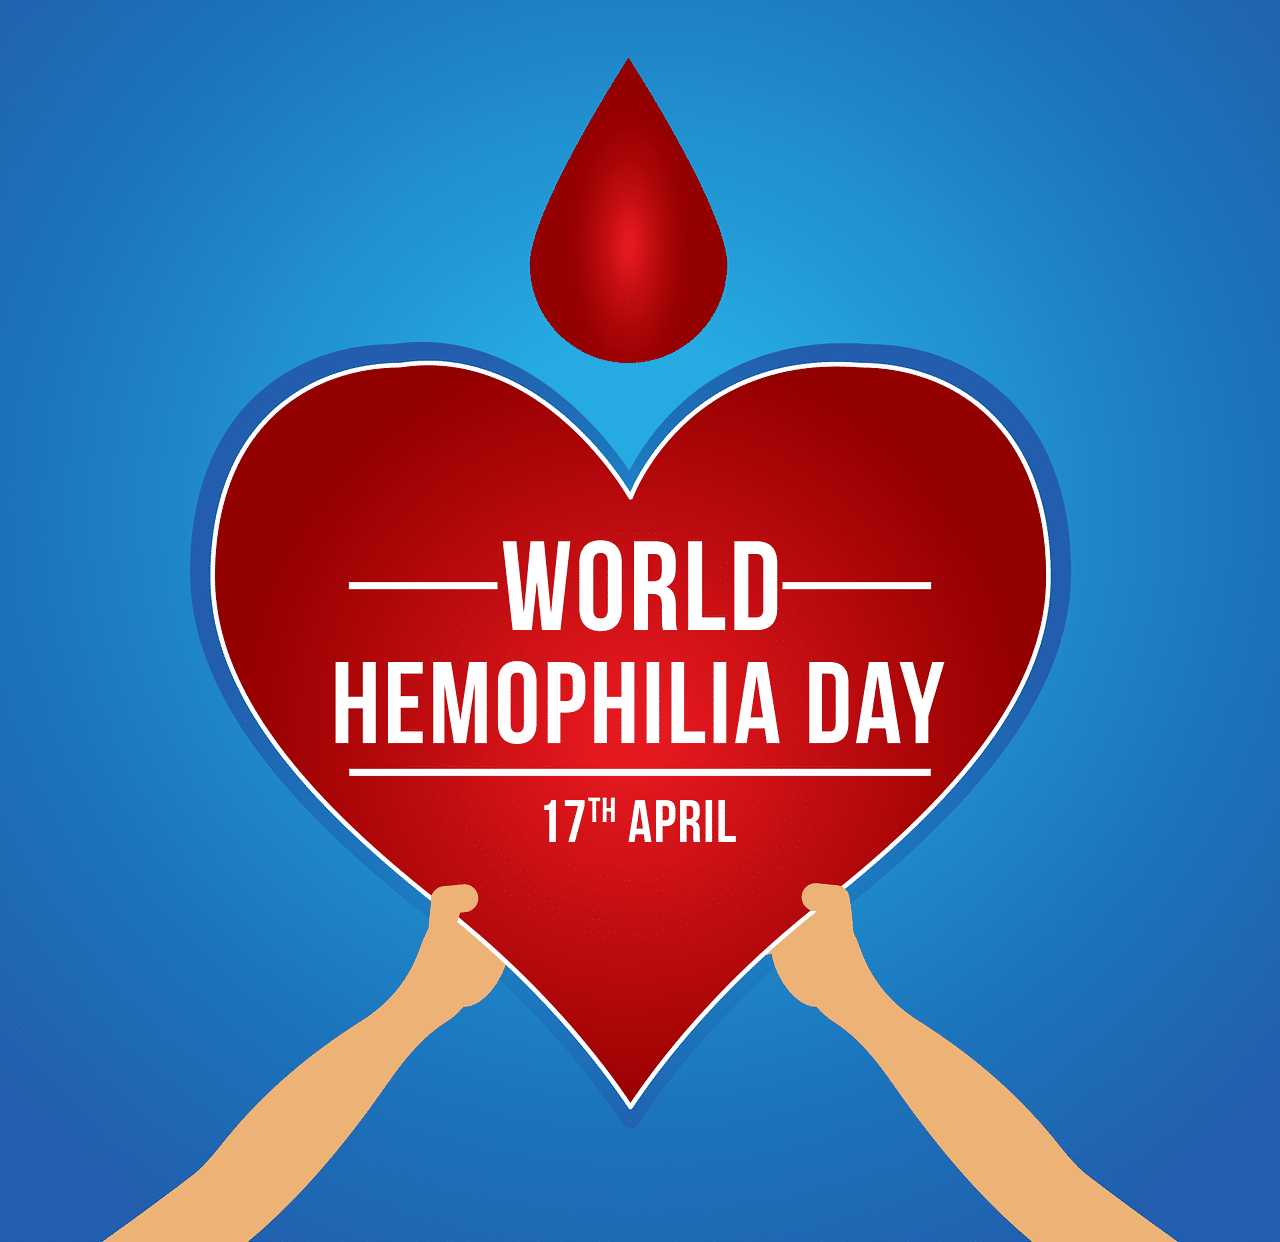 Día Mundial de la Hemofilia